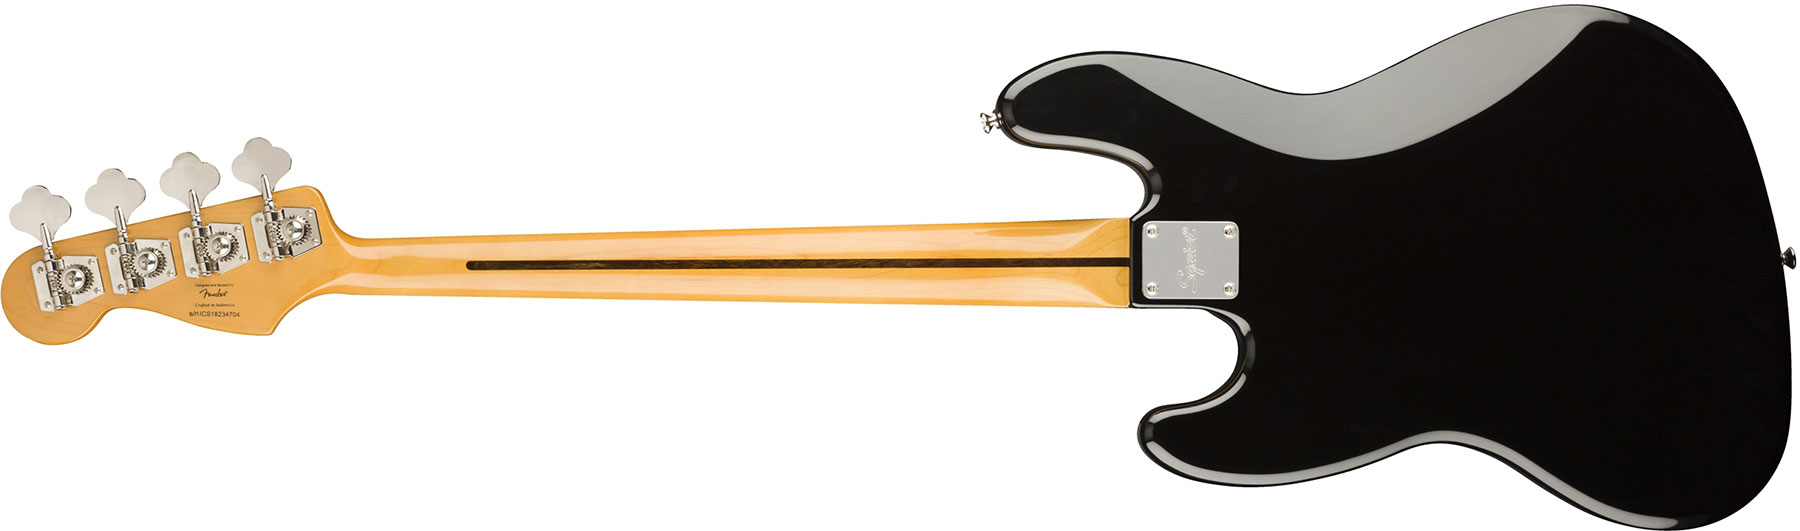 Squier Jazz Bass Classic Vibe 60s 2019 Lau - Black - Bajo eléctrico de cuerpo sólido - Variation 1